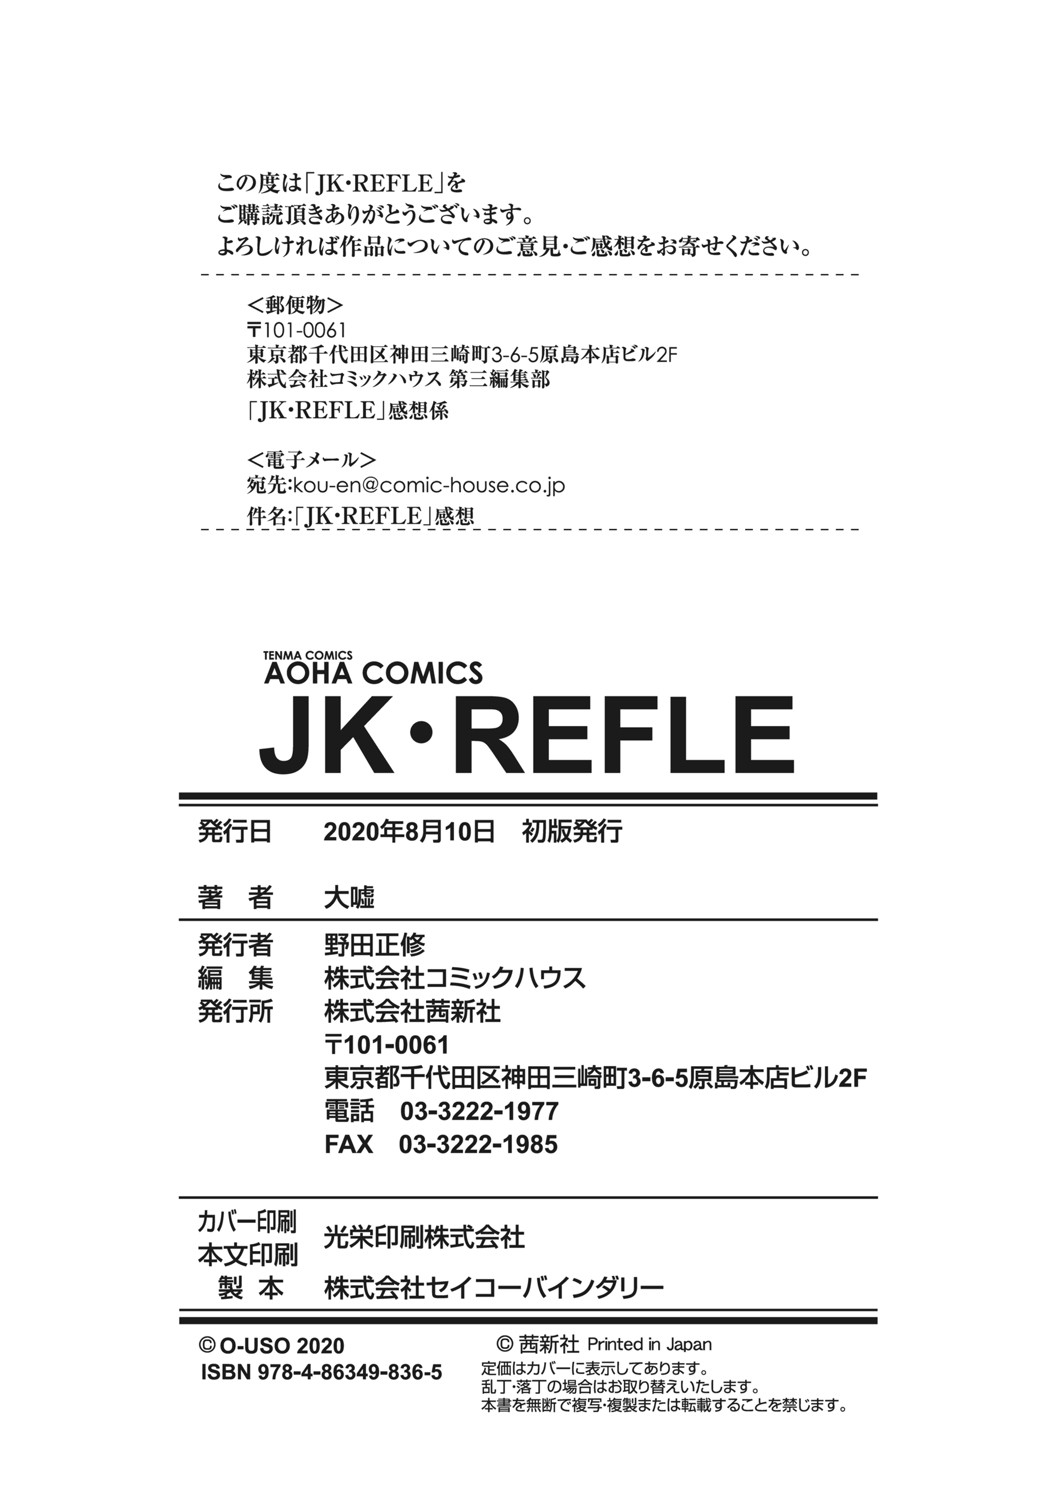 [大嘘] JK-REFLE